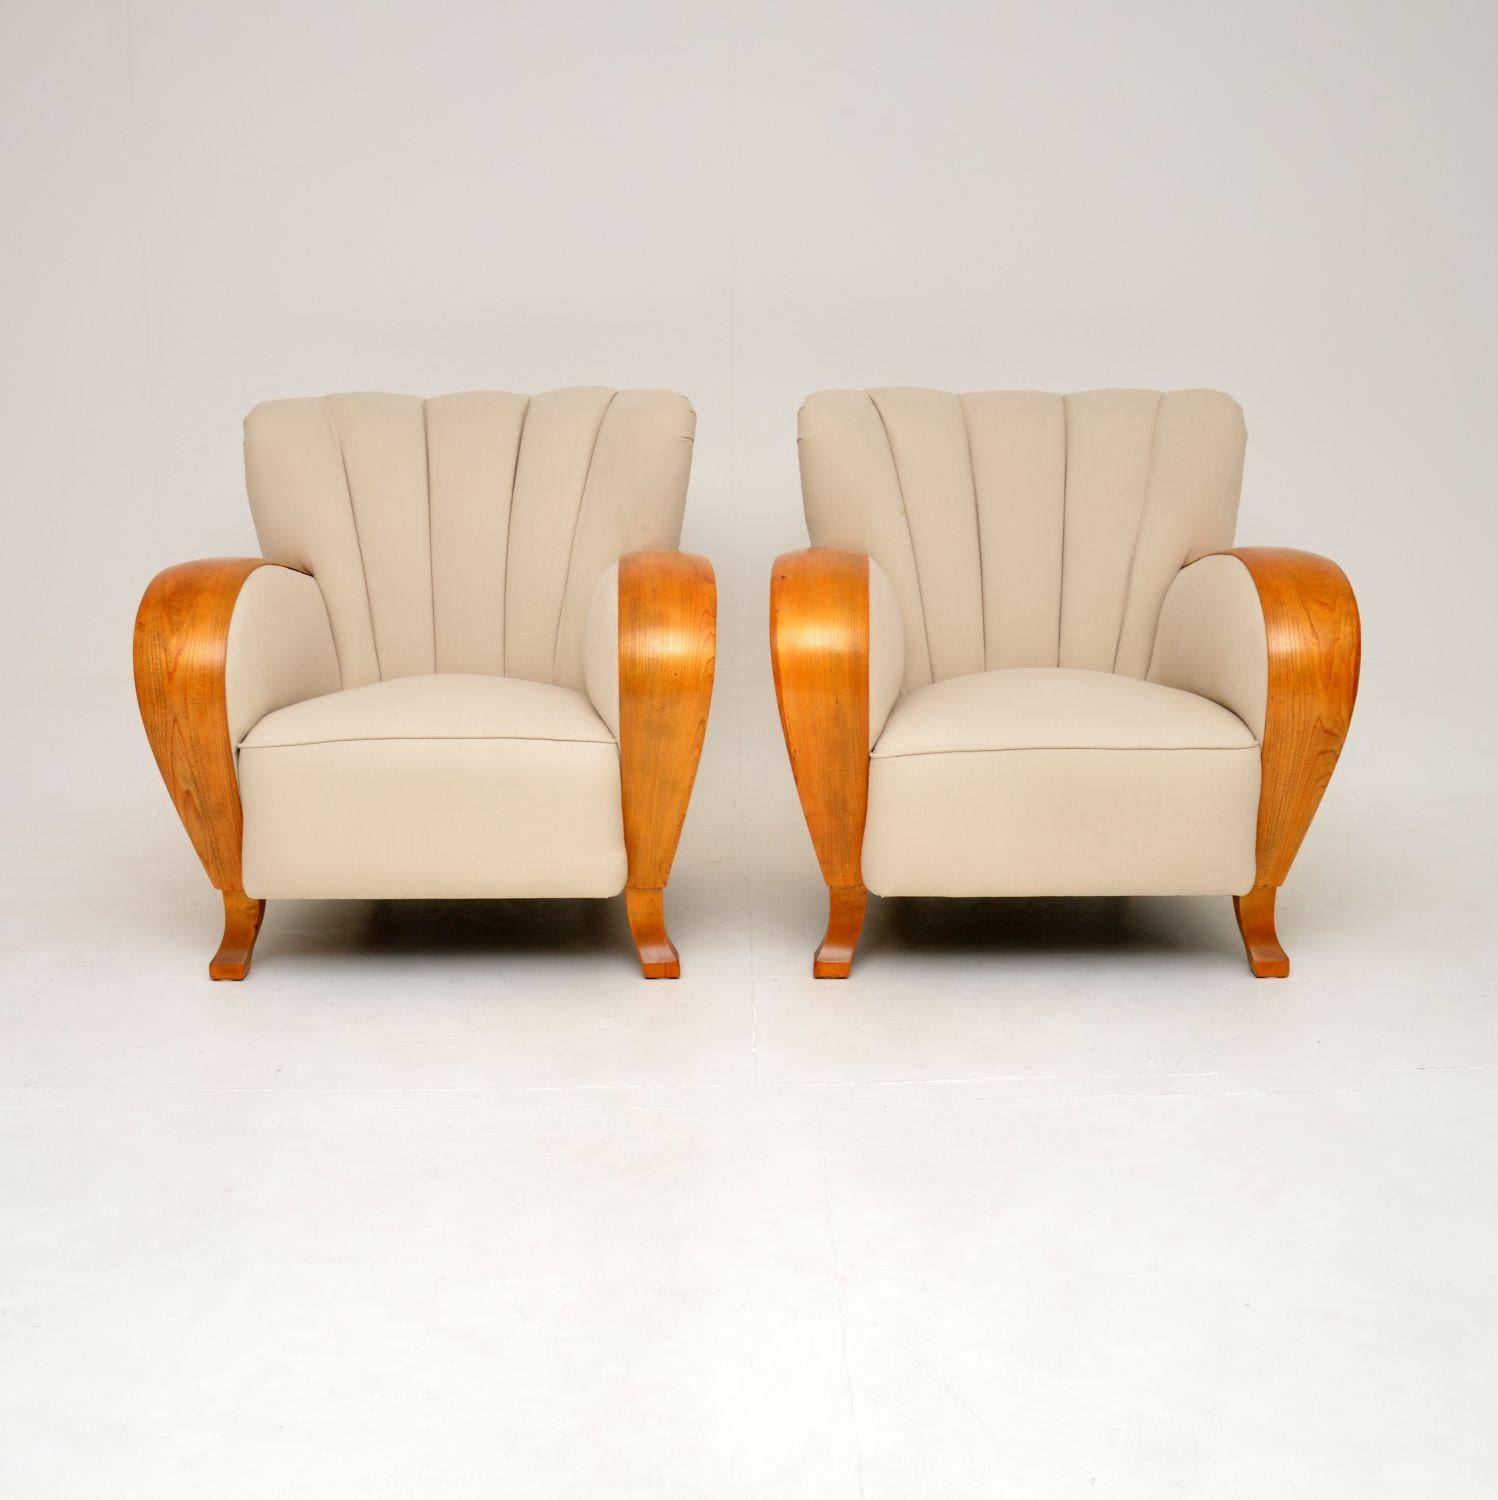 Une paire de fauteuils Art Déco aux accoudoirs en orme, absolument stupéfiante et très élégante. Ils ont été fabriqués en Suède, nous les avons récemment importés et ils datent des années 1920-30.

Ils ont des proportions généreuses et sont d'une